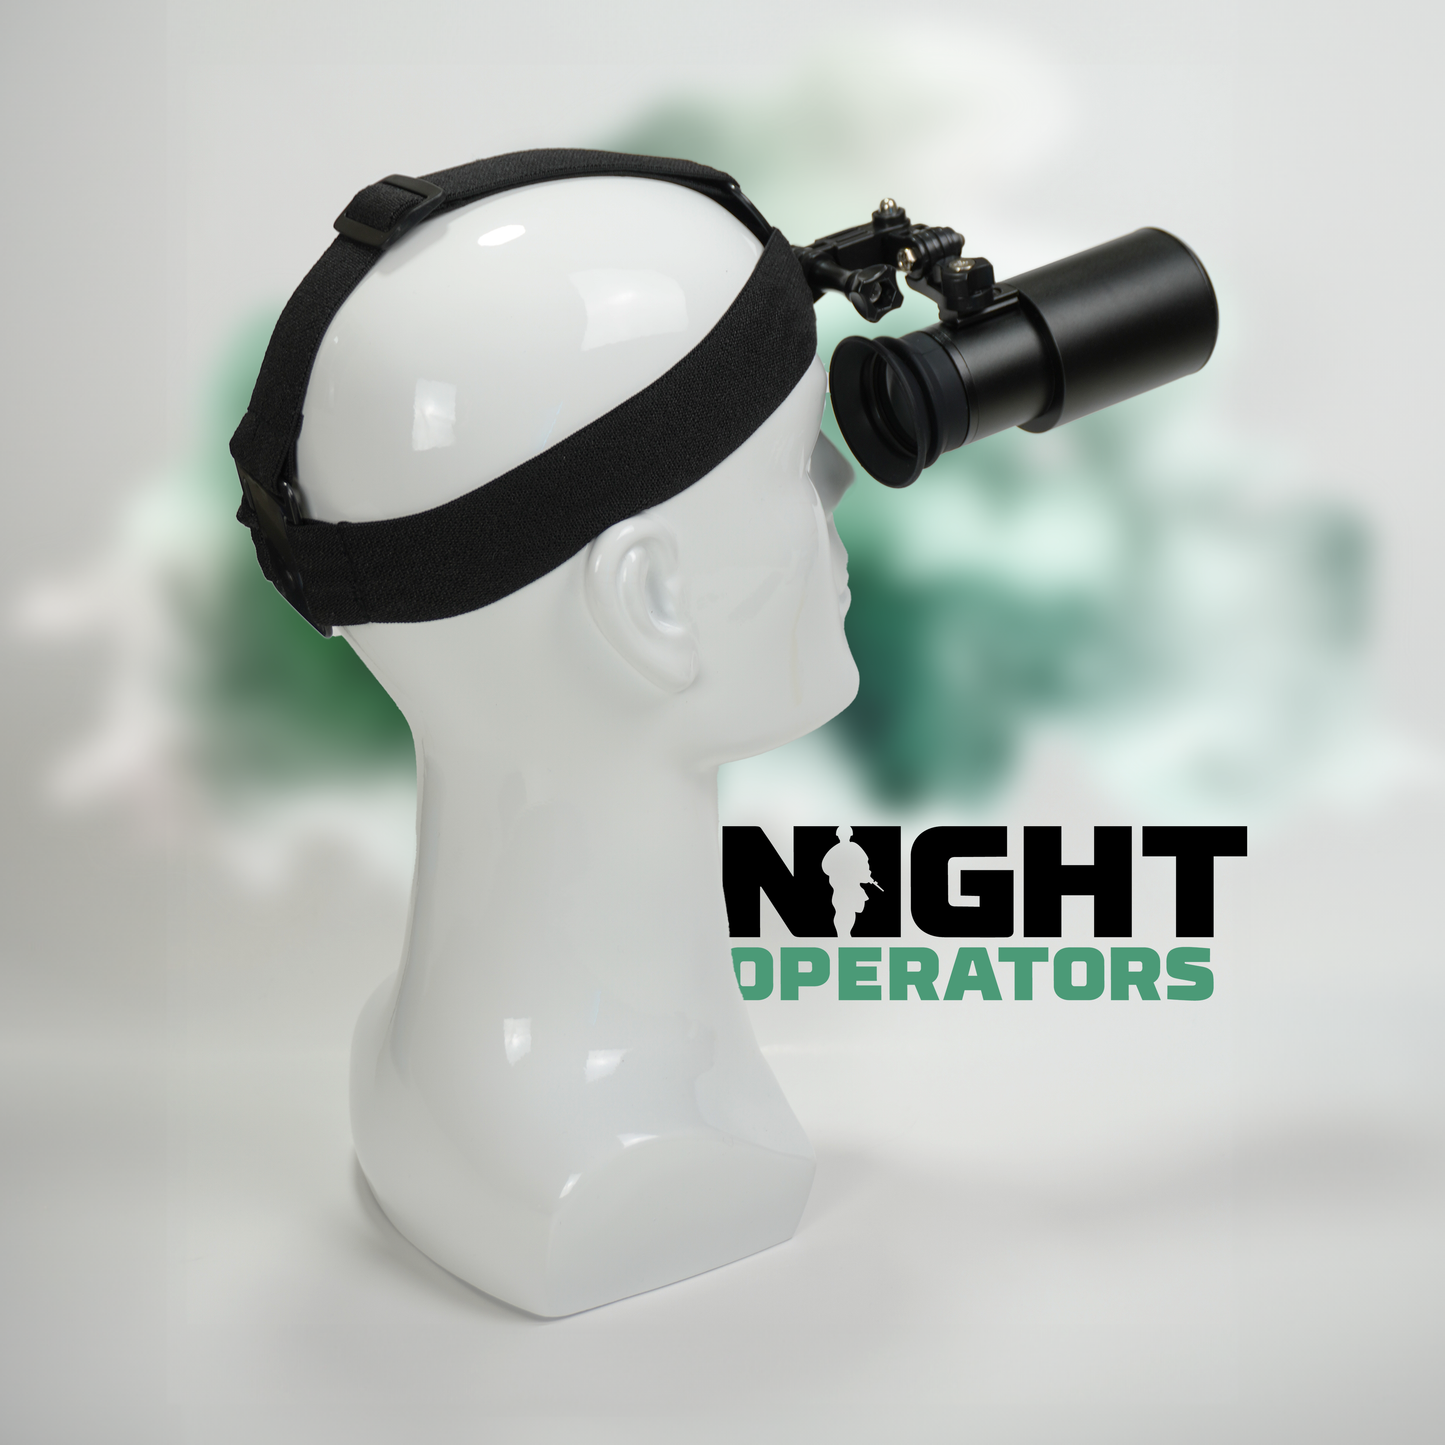 Night Operators MAX 2.0 Night Vision Goggle